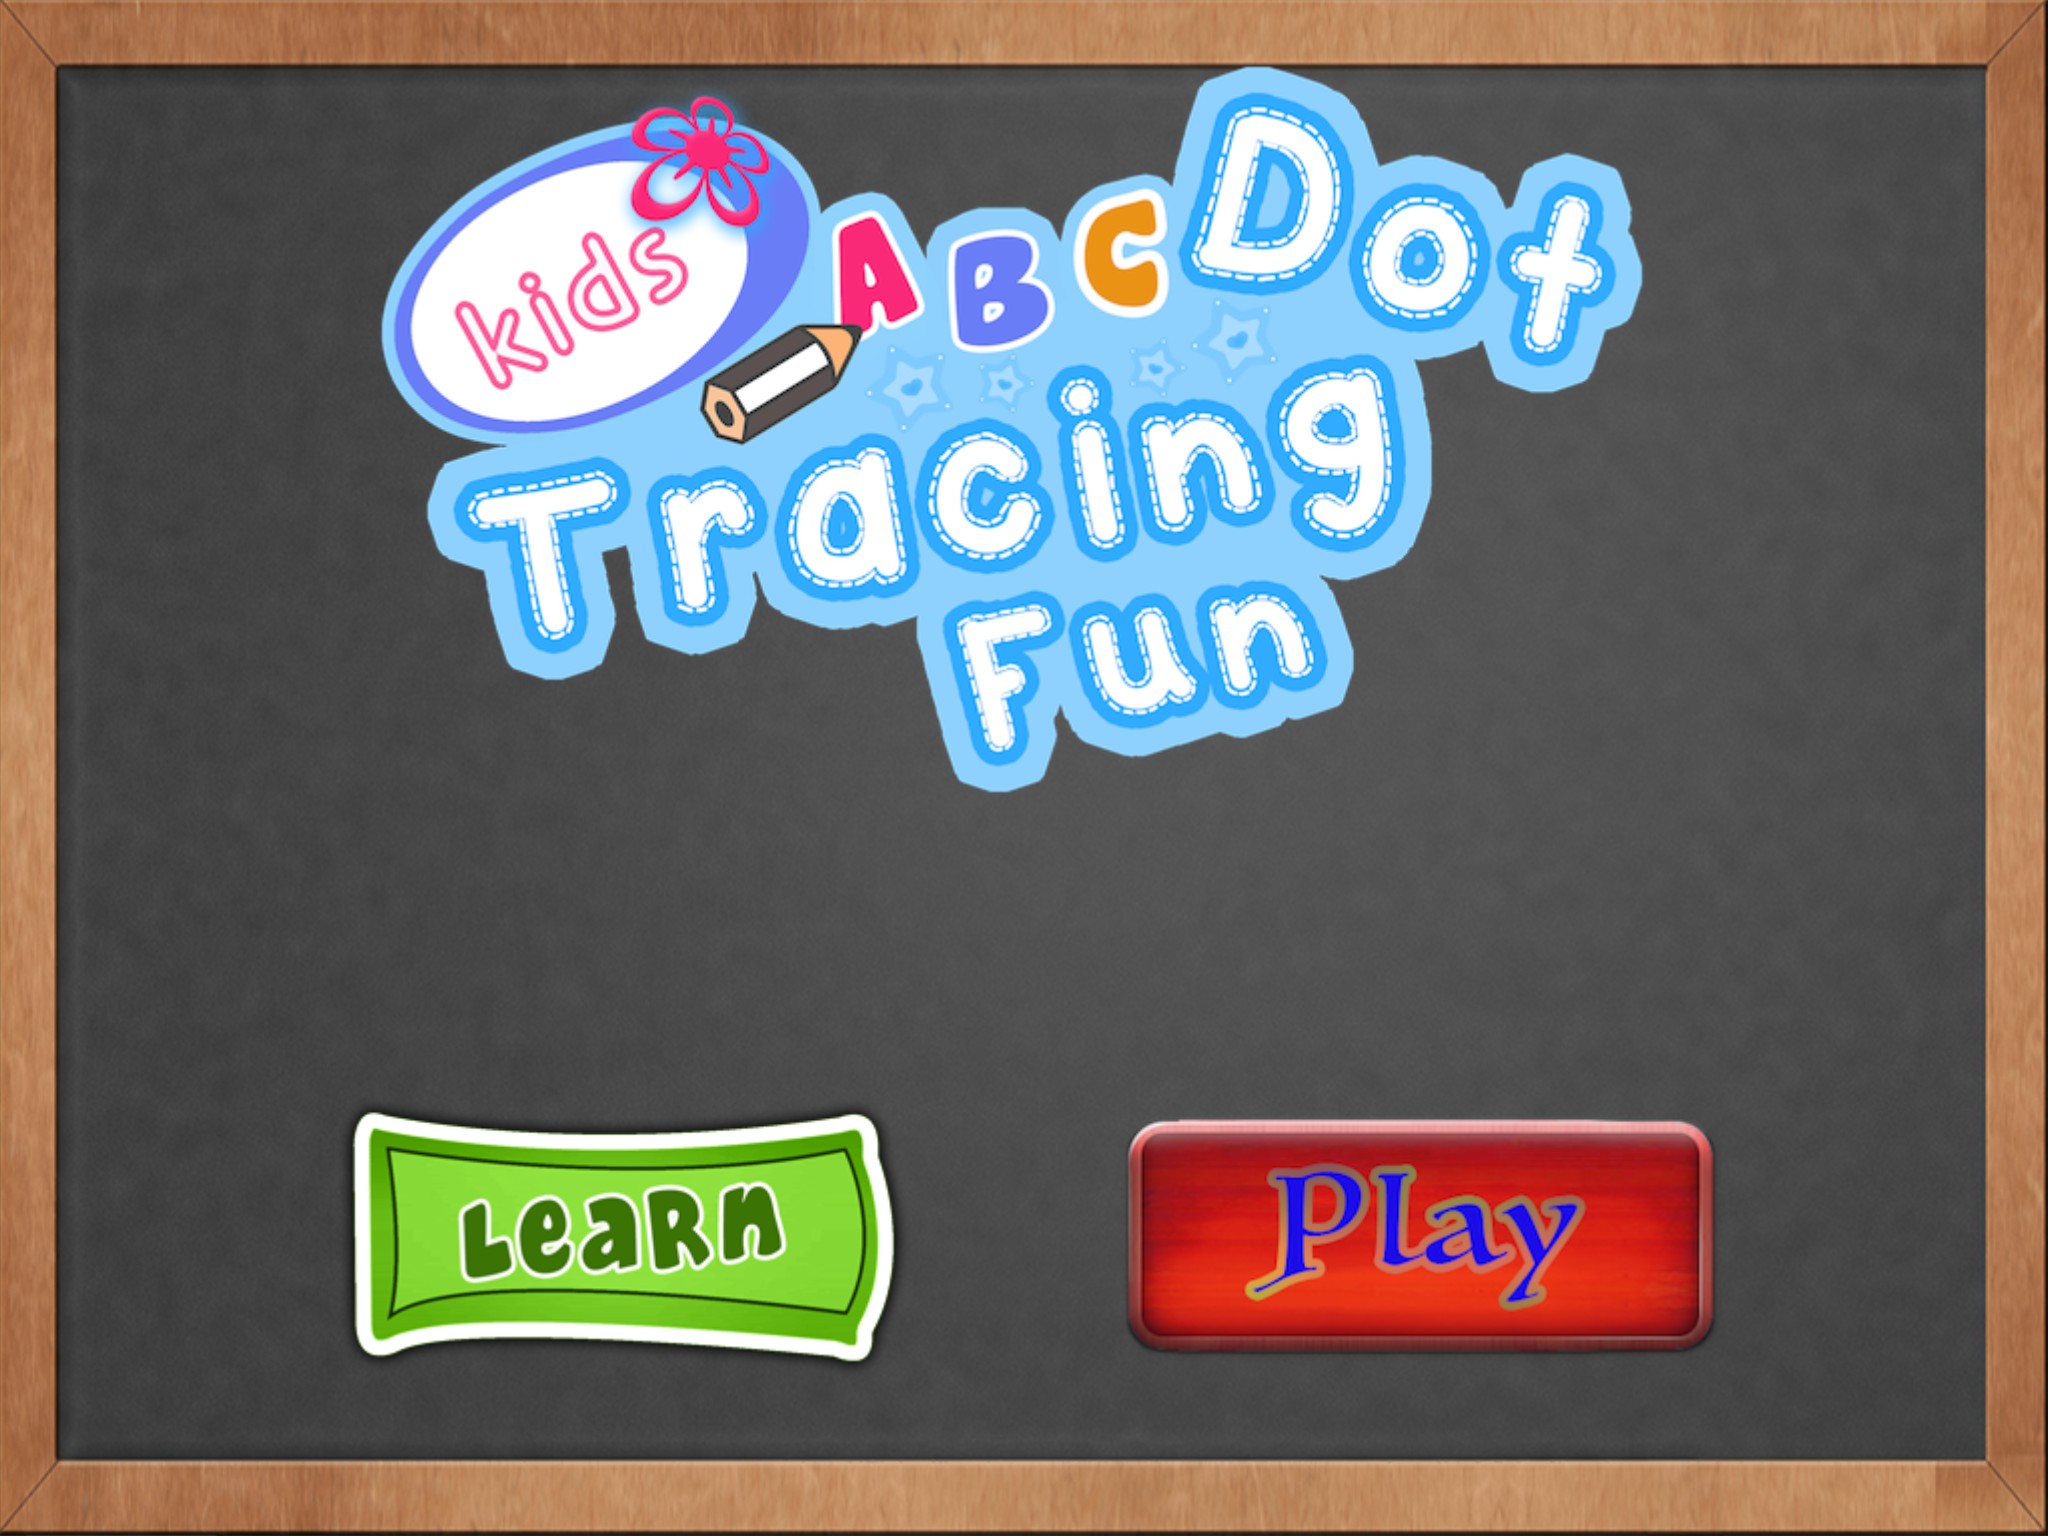 Kids ABC Dot Tracing Fun